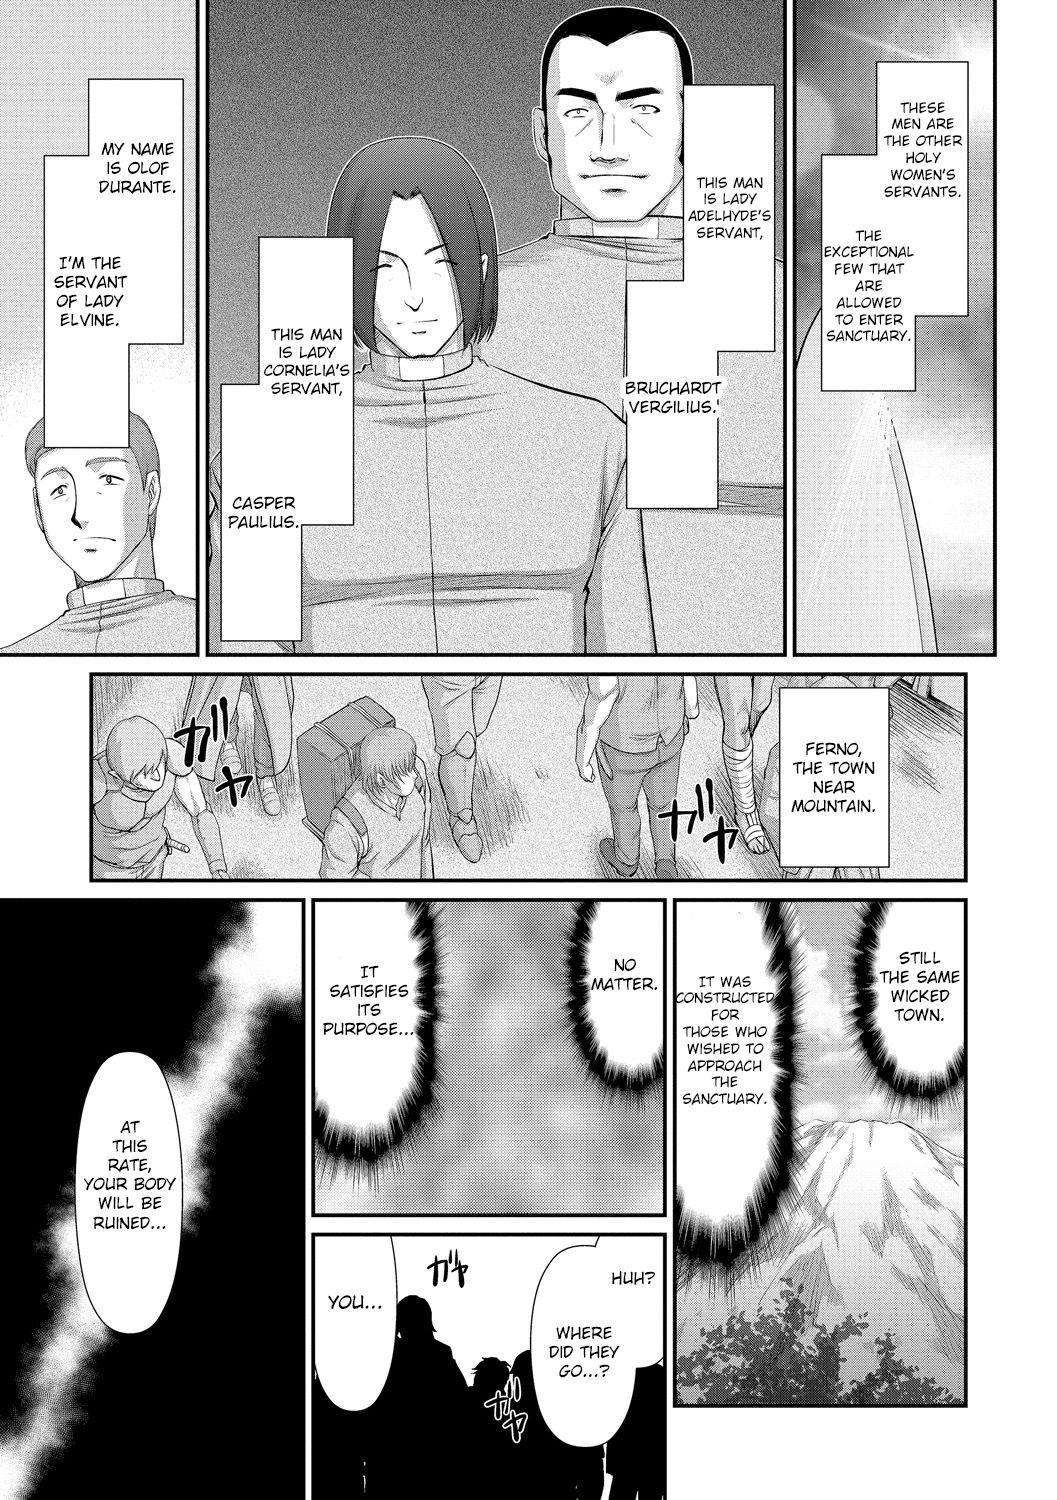 Tats Inraku no Seijo Elvine Chudai - Page 11